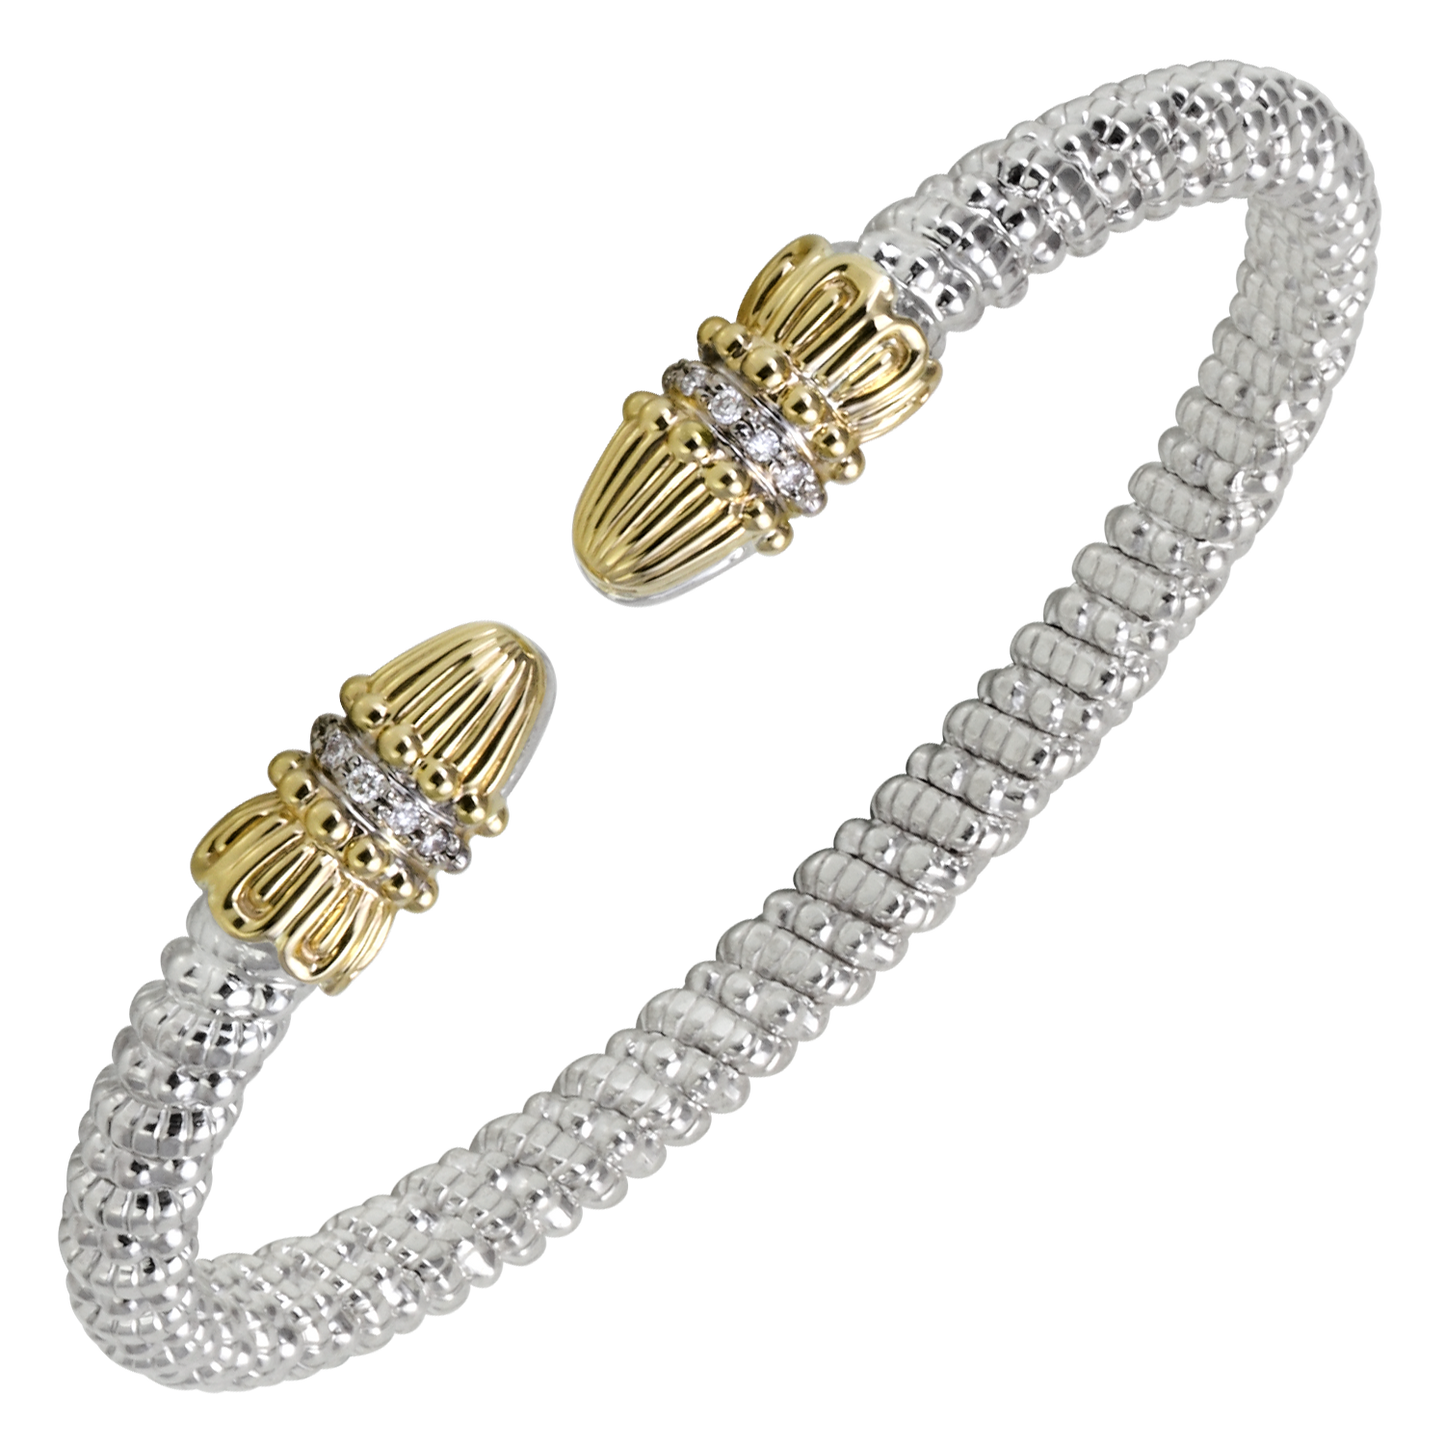 Buy Vahan Bracelets | Sterling Silver & 14K Gold | 0.08cttw Diamonds | 4mm Width | Shop Avonlea Jewelry only at Avonlea Jewelry.